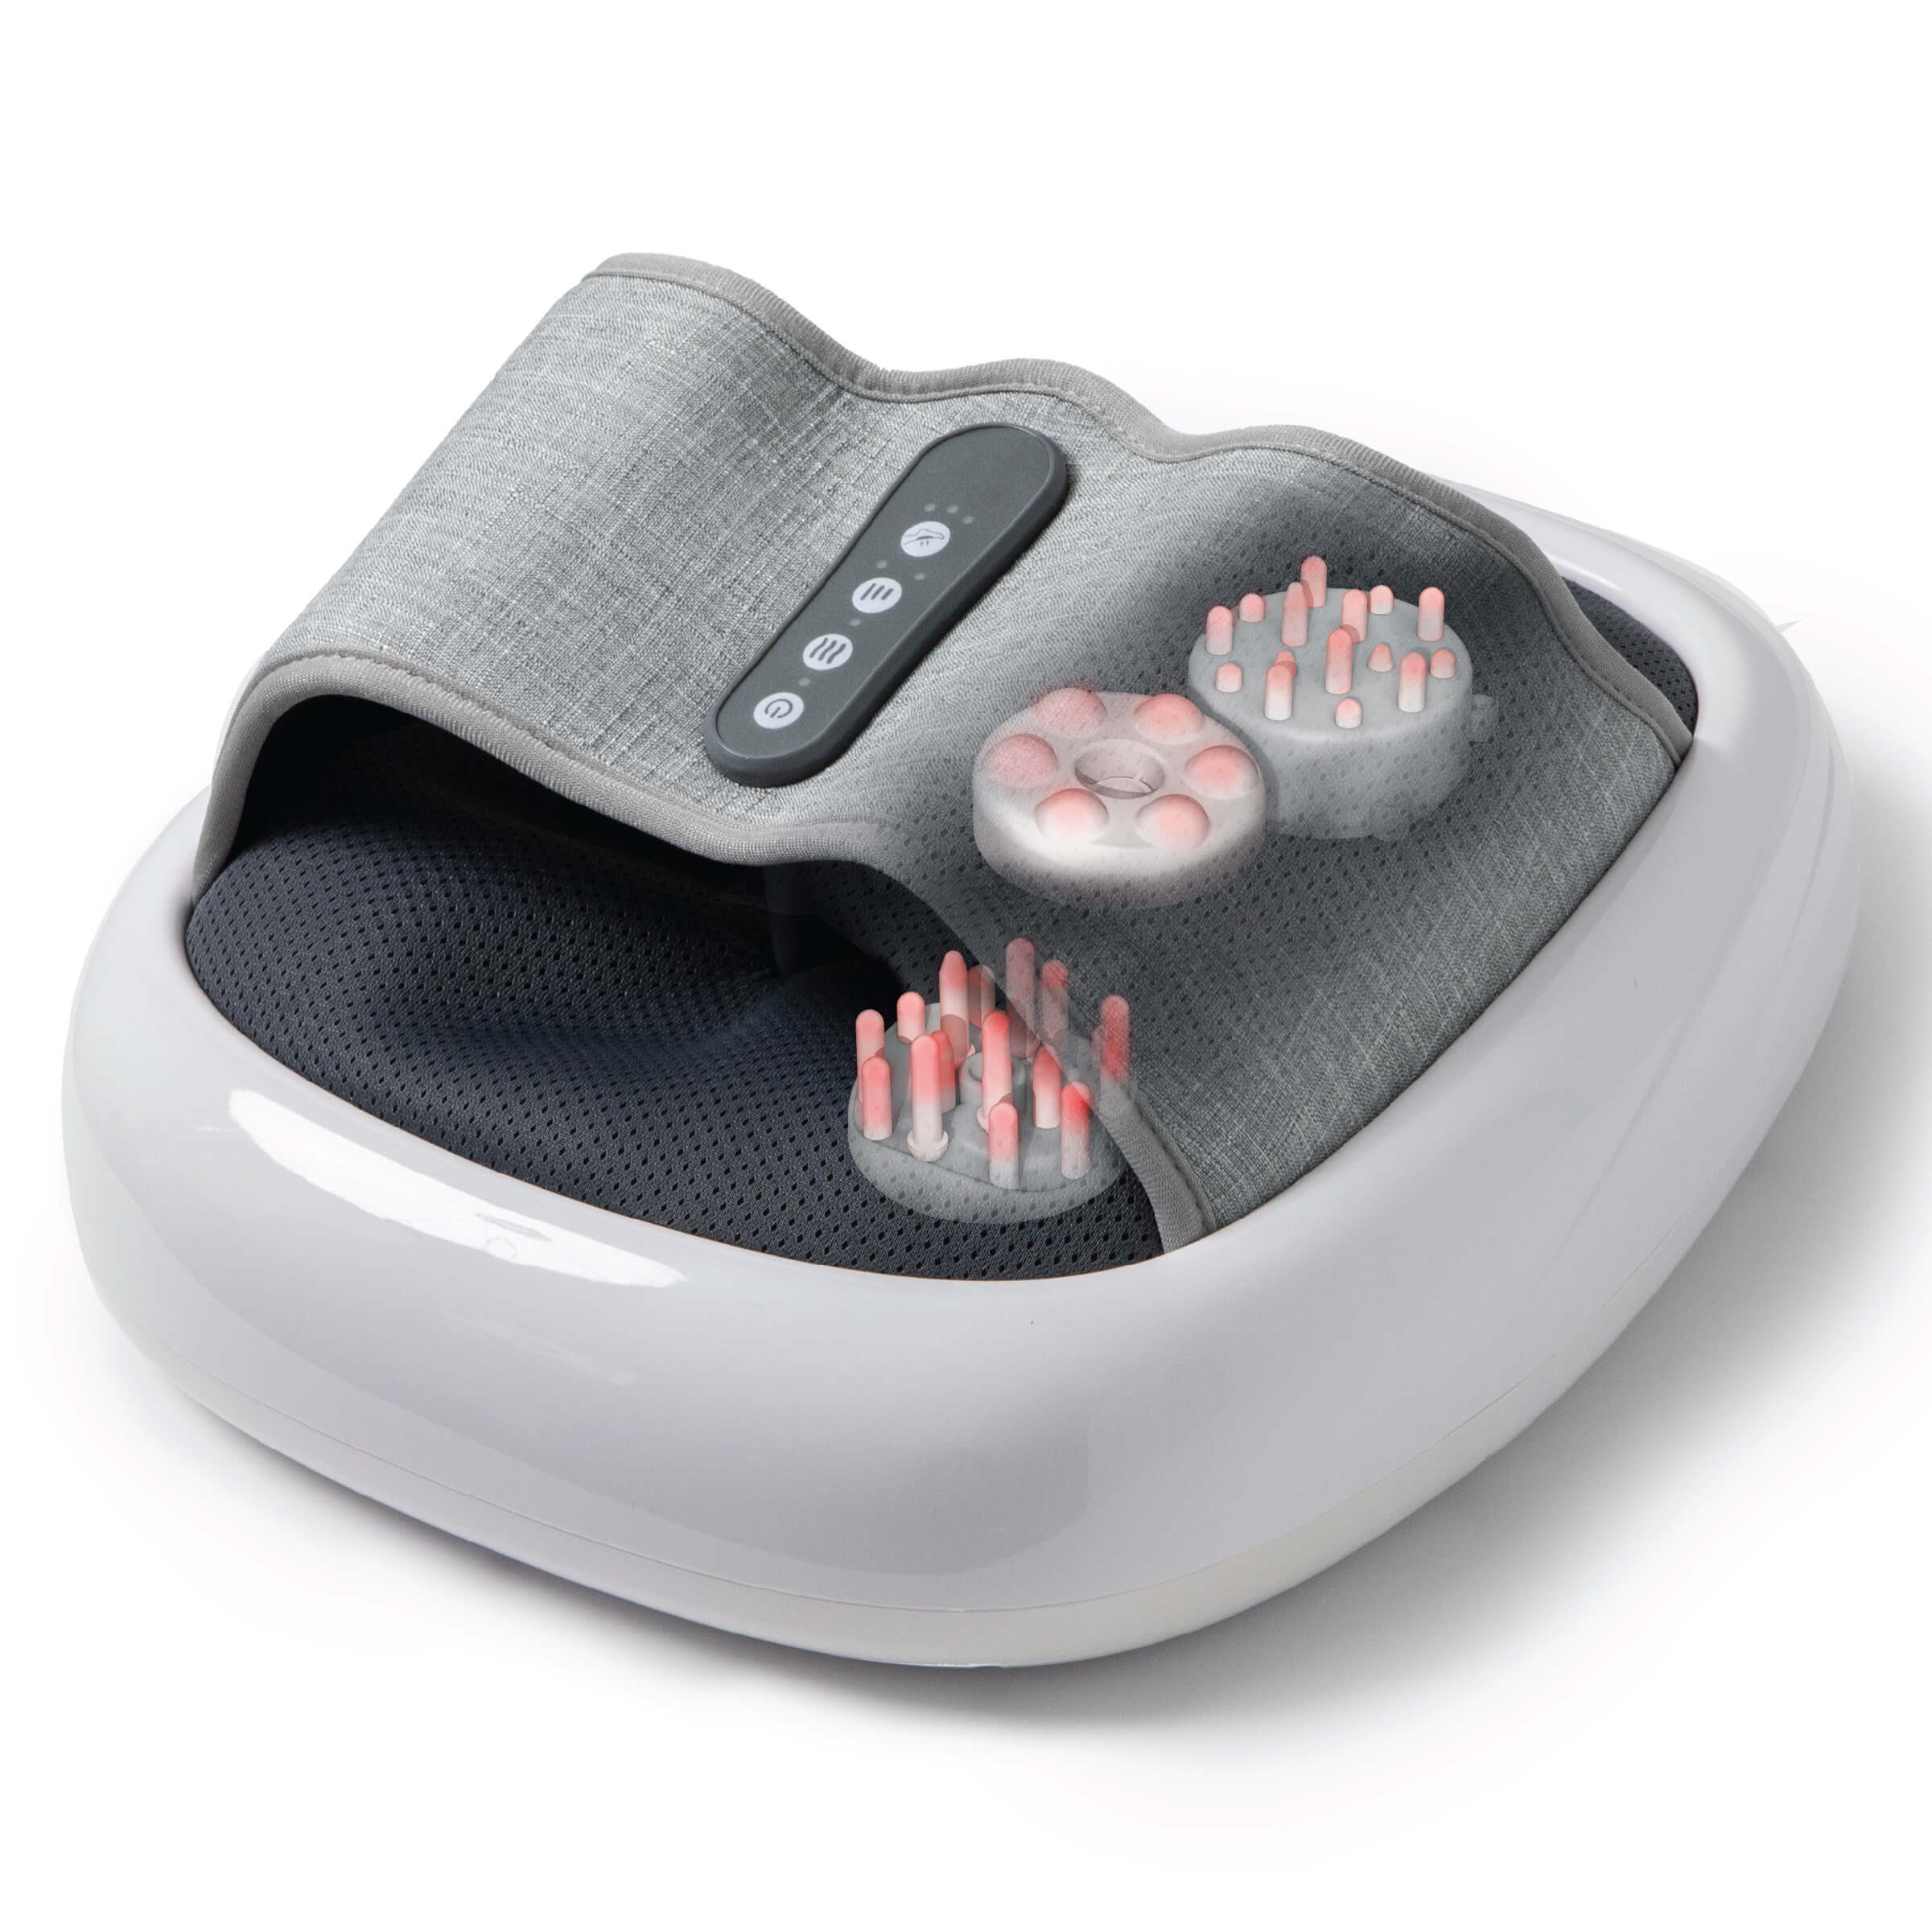 Sharper Image Fußmassagegerät, Shiatsu Fussmassage (Wärmefunktion, Rollen, Luftkompression) Muskellockerung, fördert die Durchblutung, entspannt müde Füße, bis Schuhgröße 46, leise, Geschenkidee